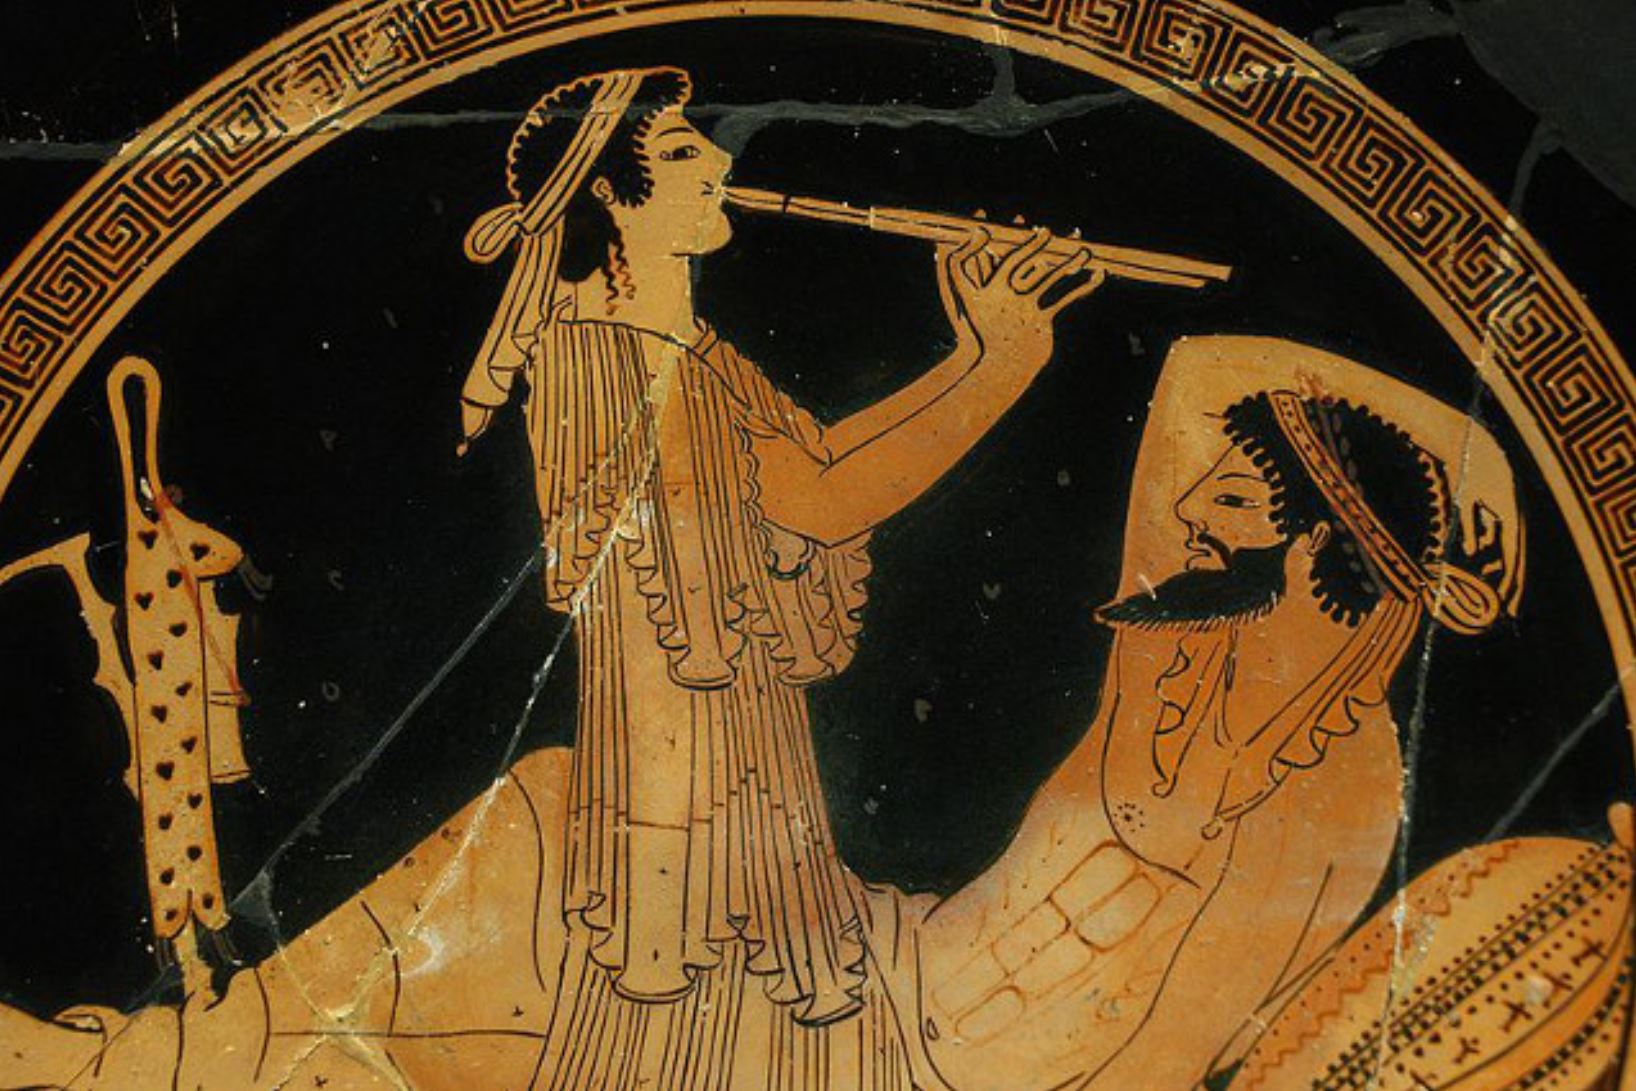 Cerámica griega en la que aparece representado un flautista tocando.